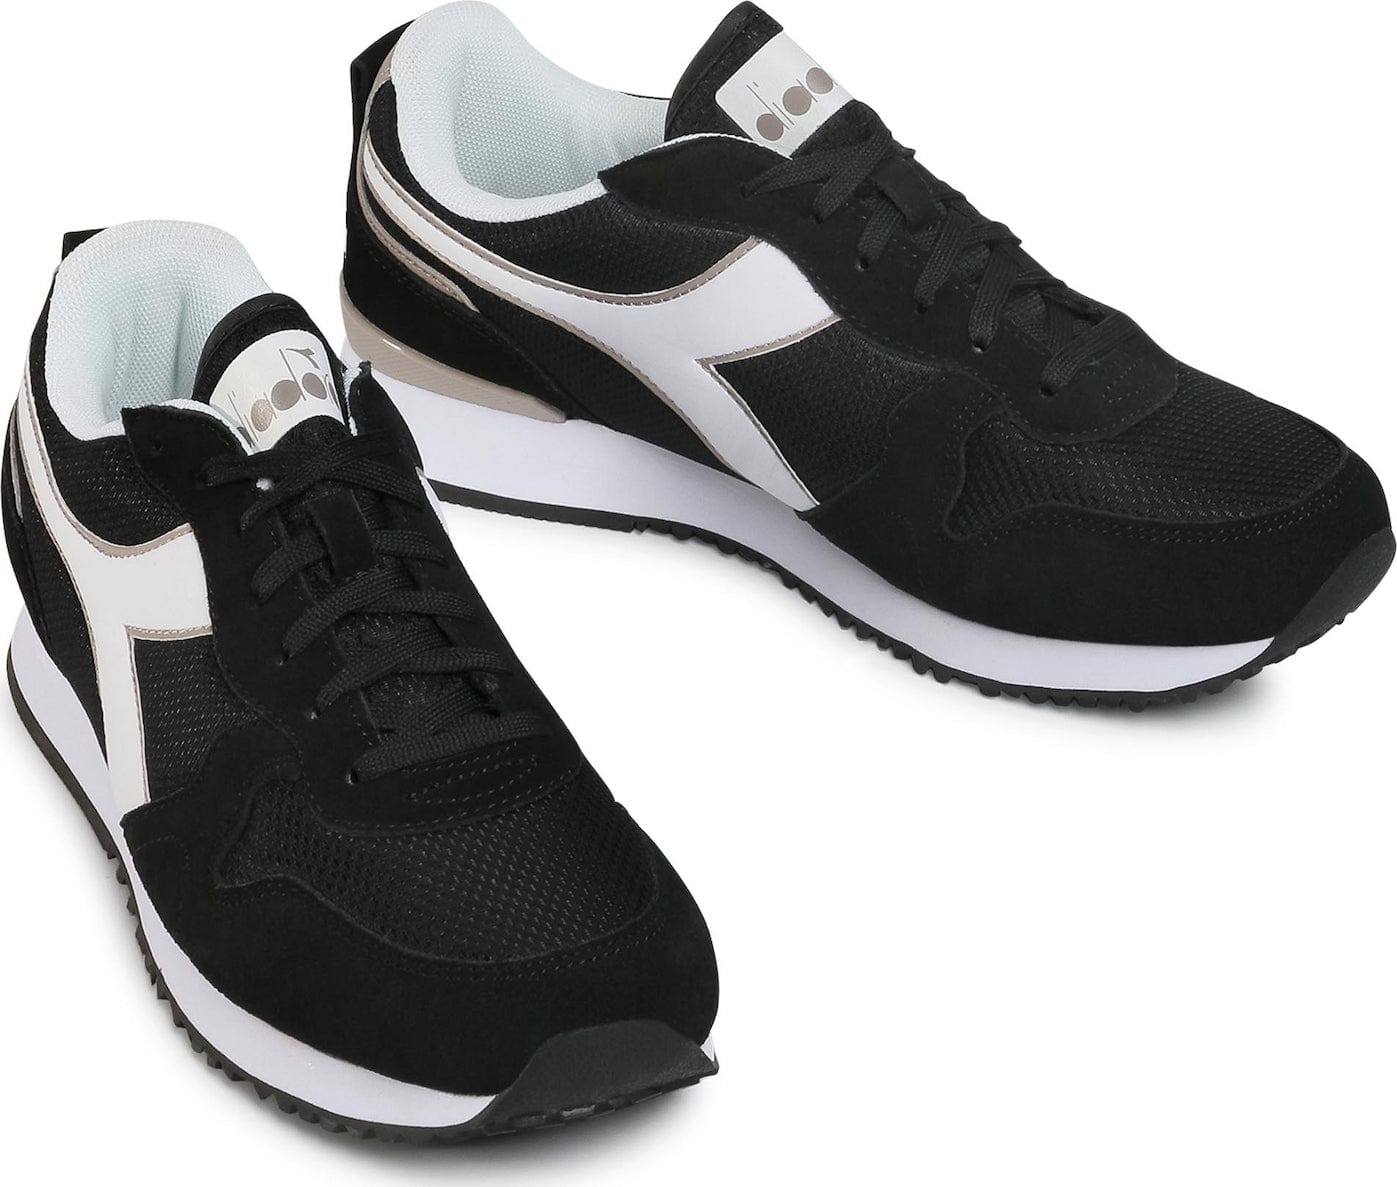 Diadora sneakers olympia - La Scarpa Shoes